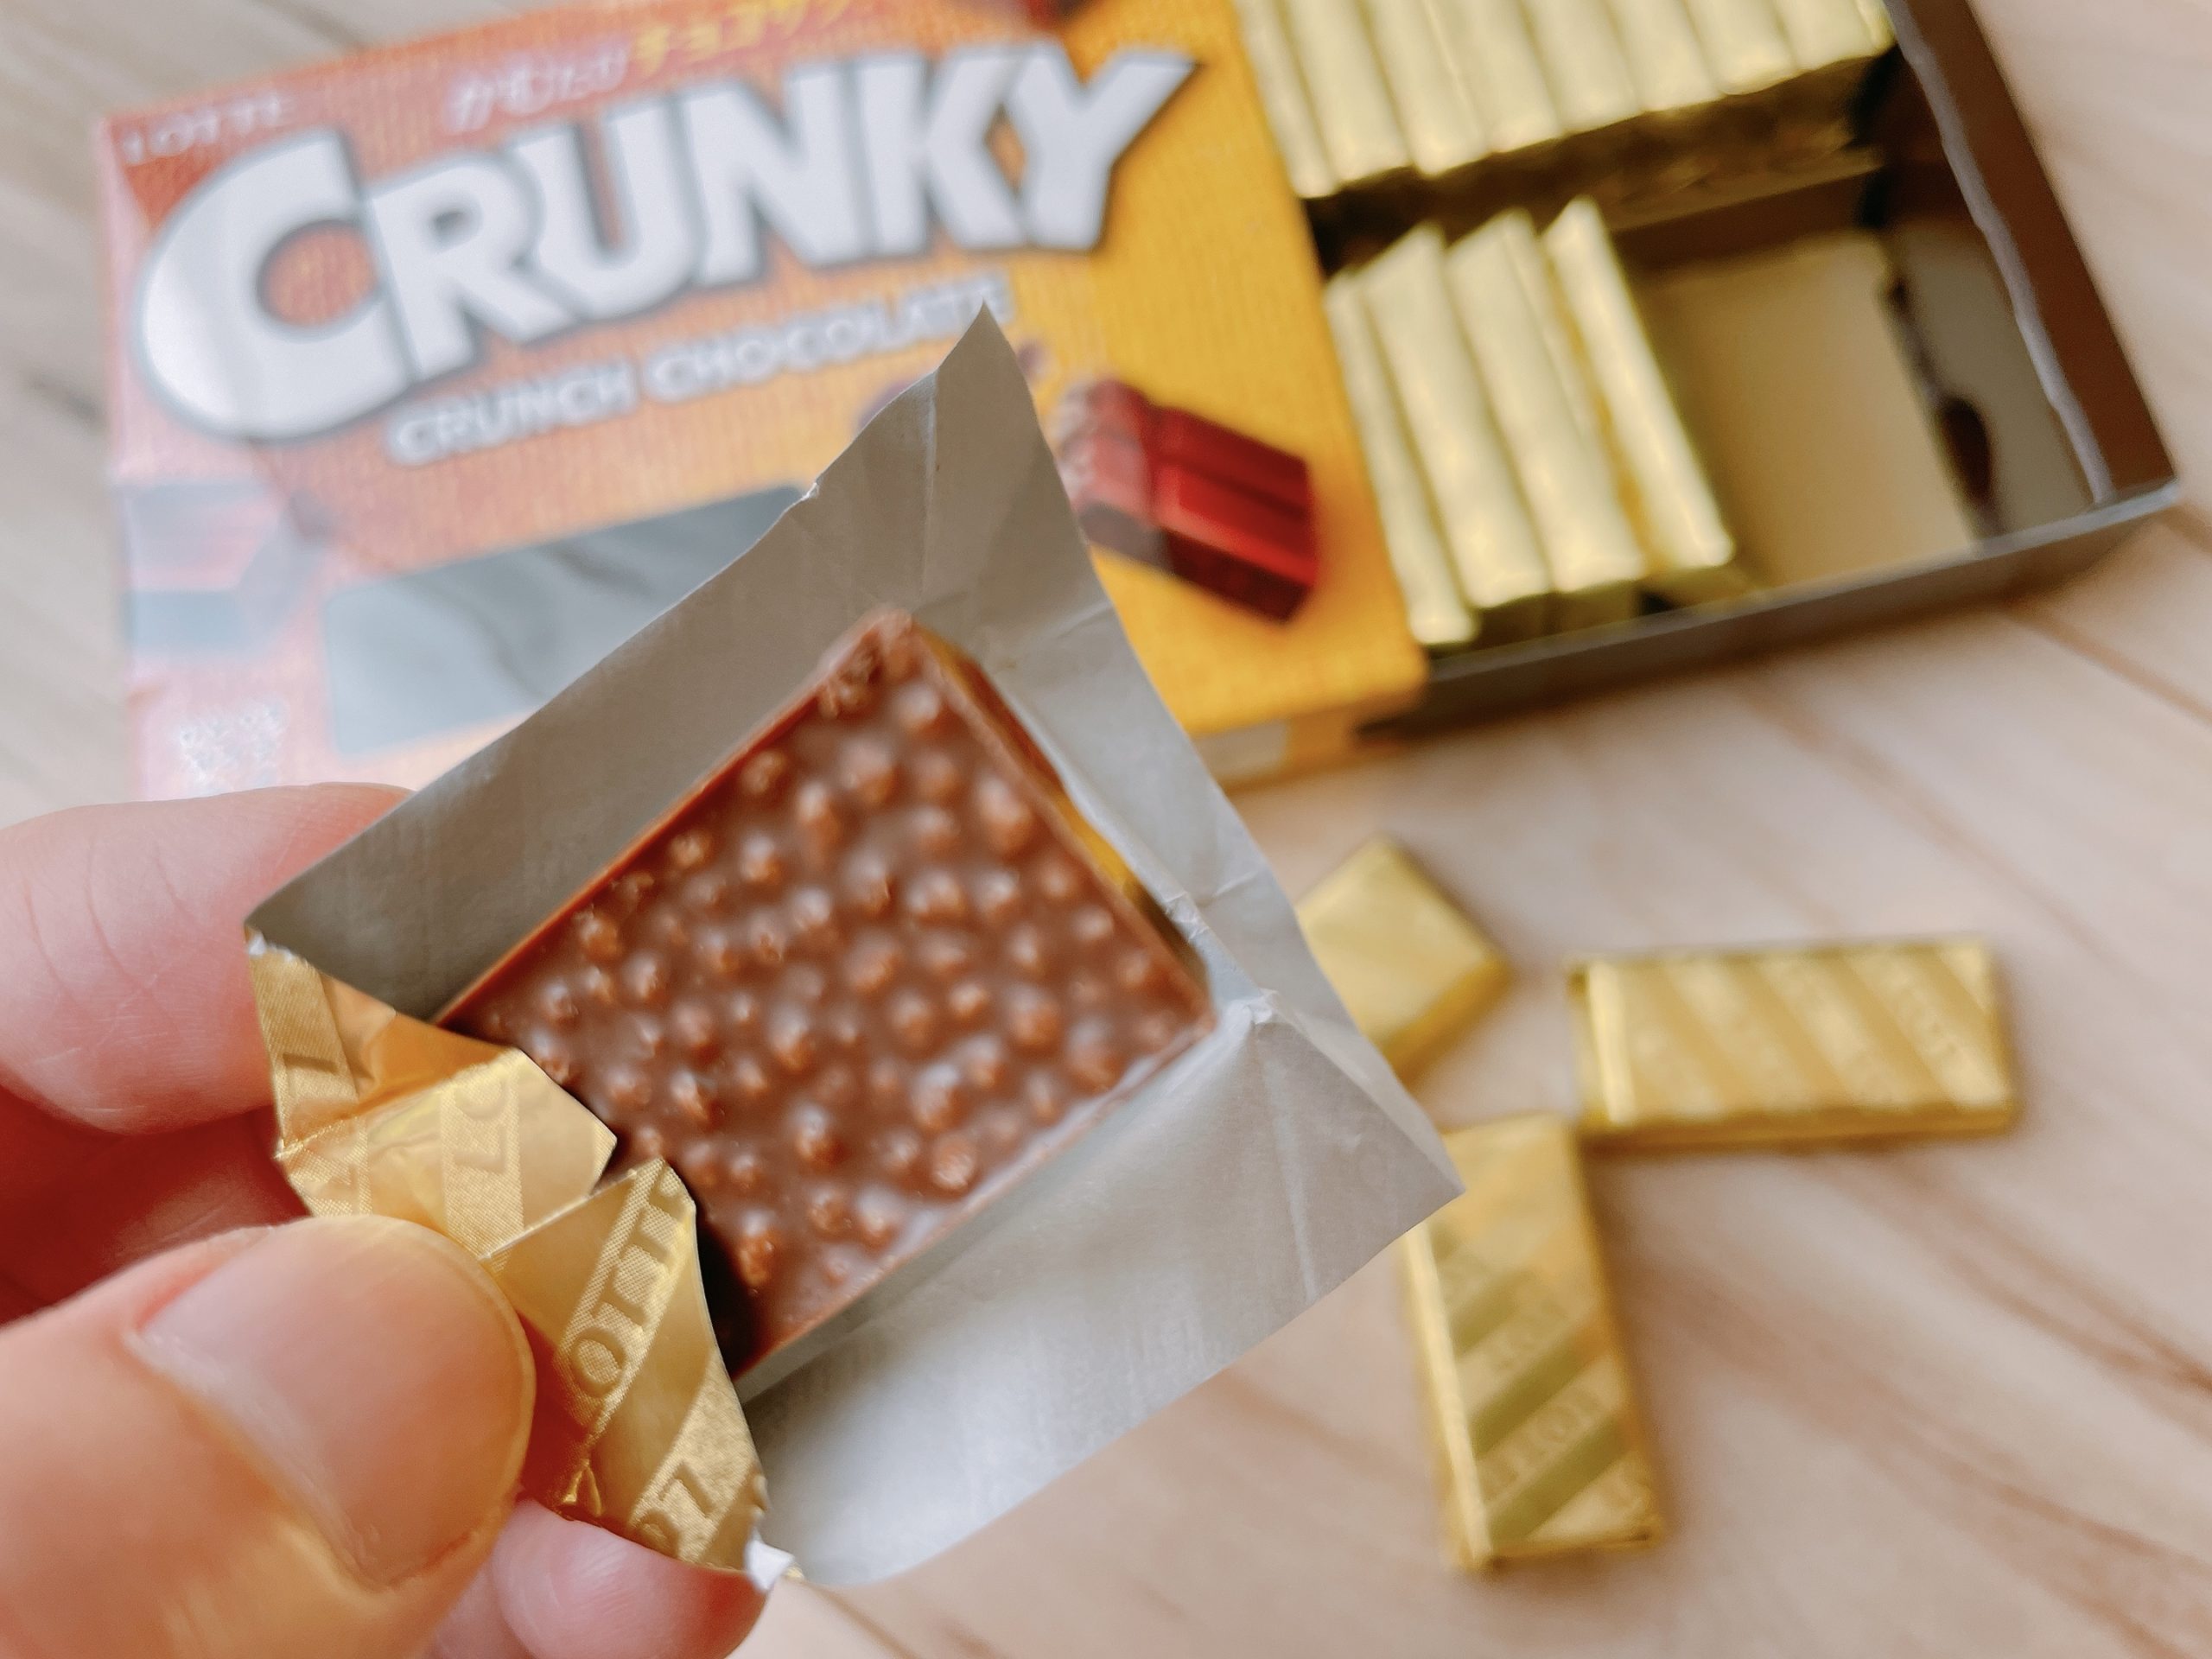 クランキーチョコレートエクセレントはパフがびっしり